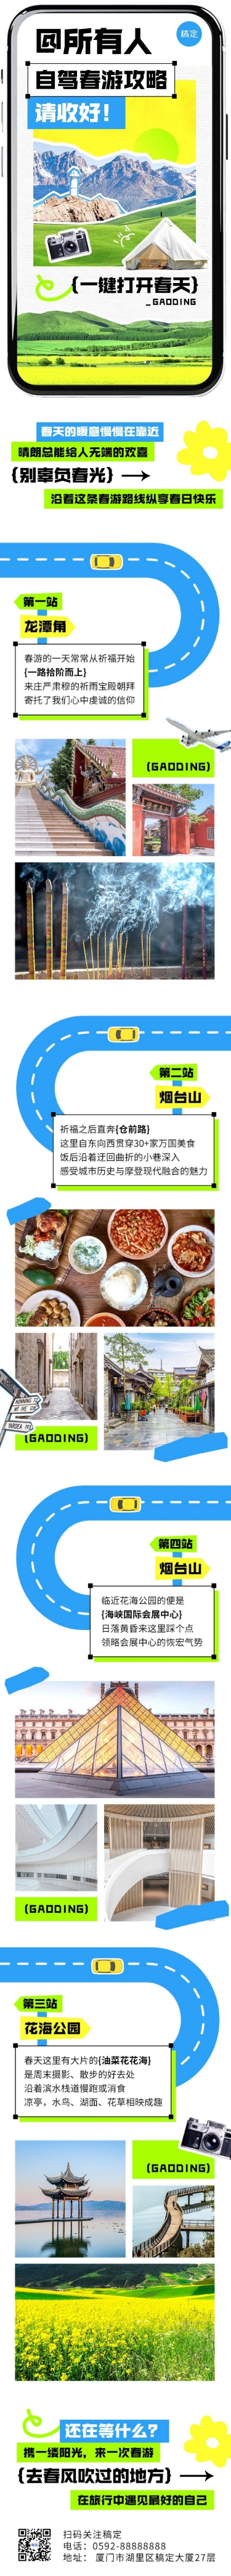 春游旅游路线宣传微信公众号文章长图